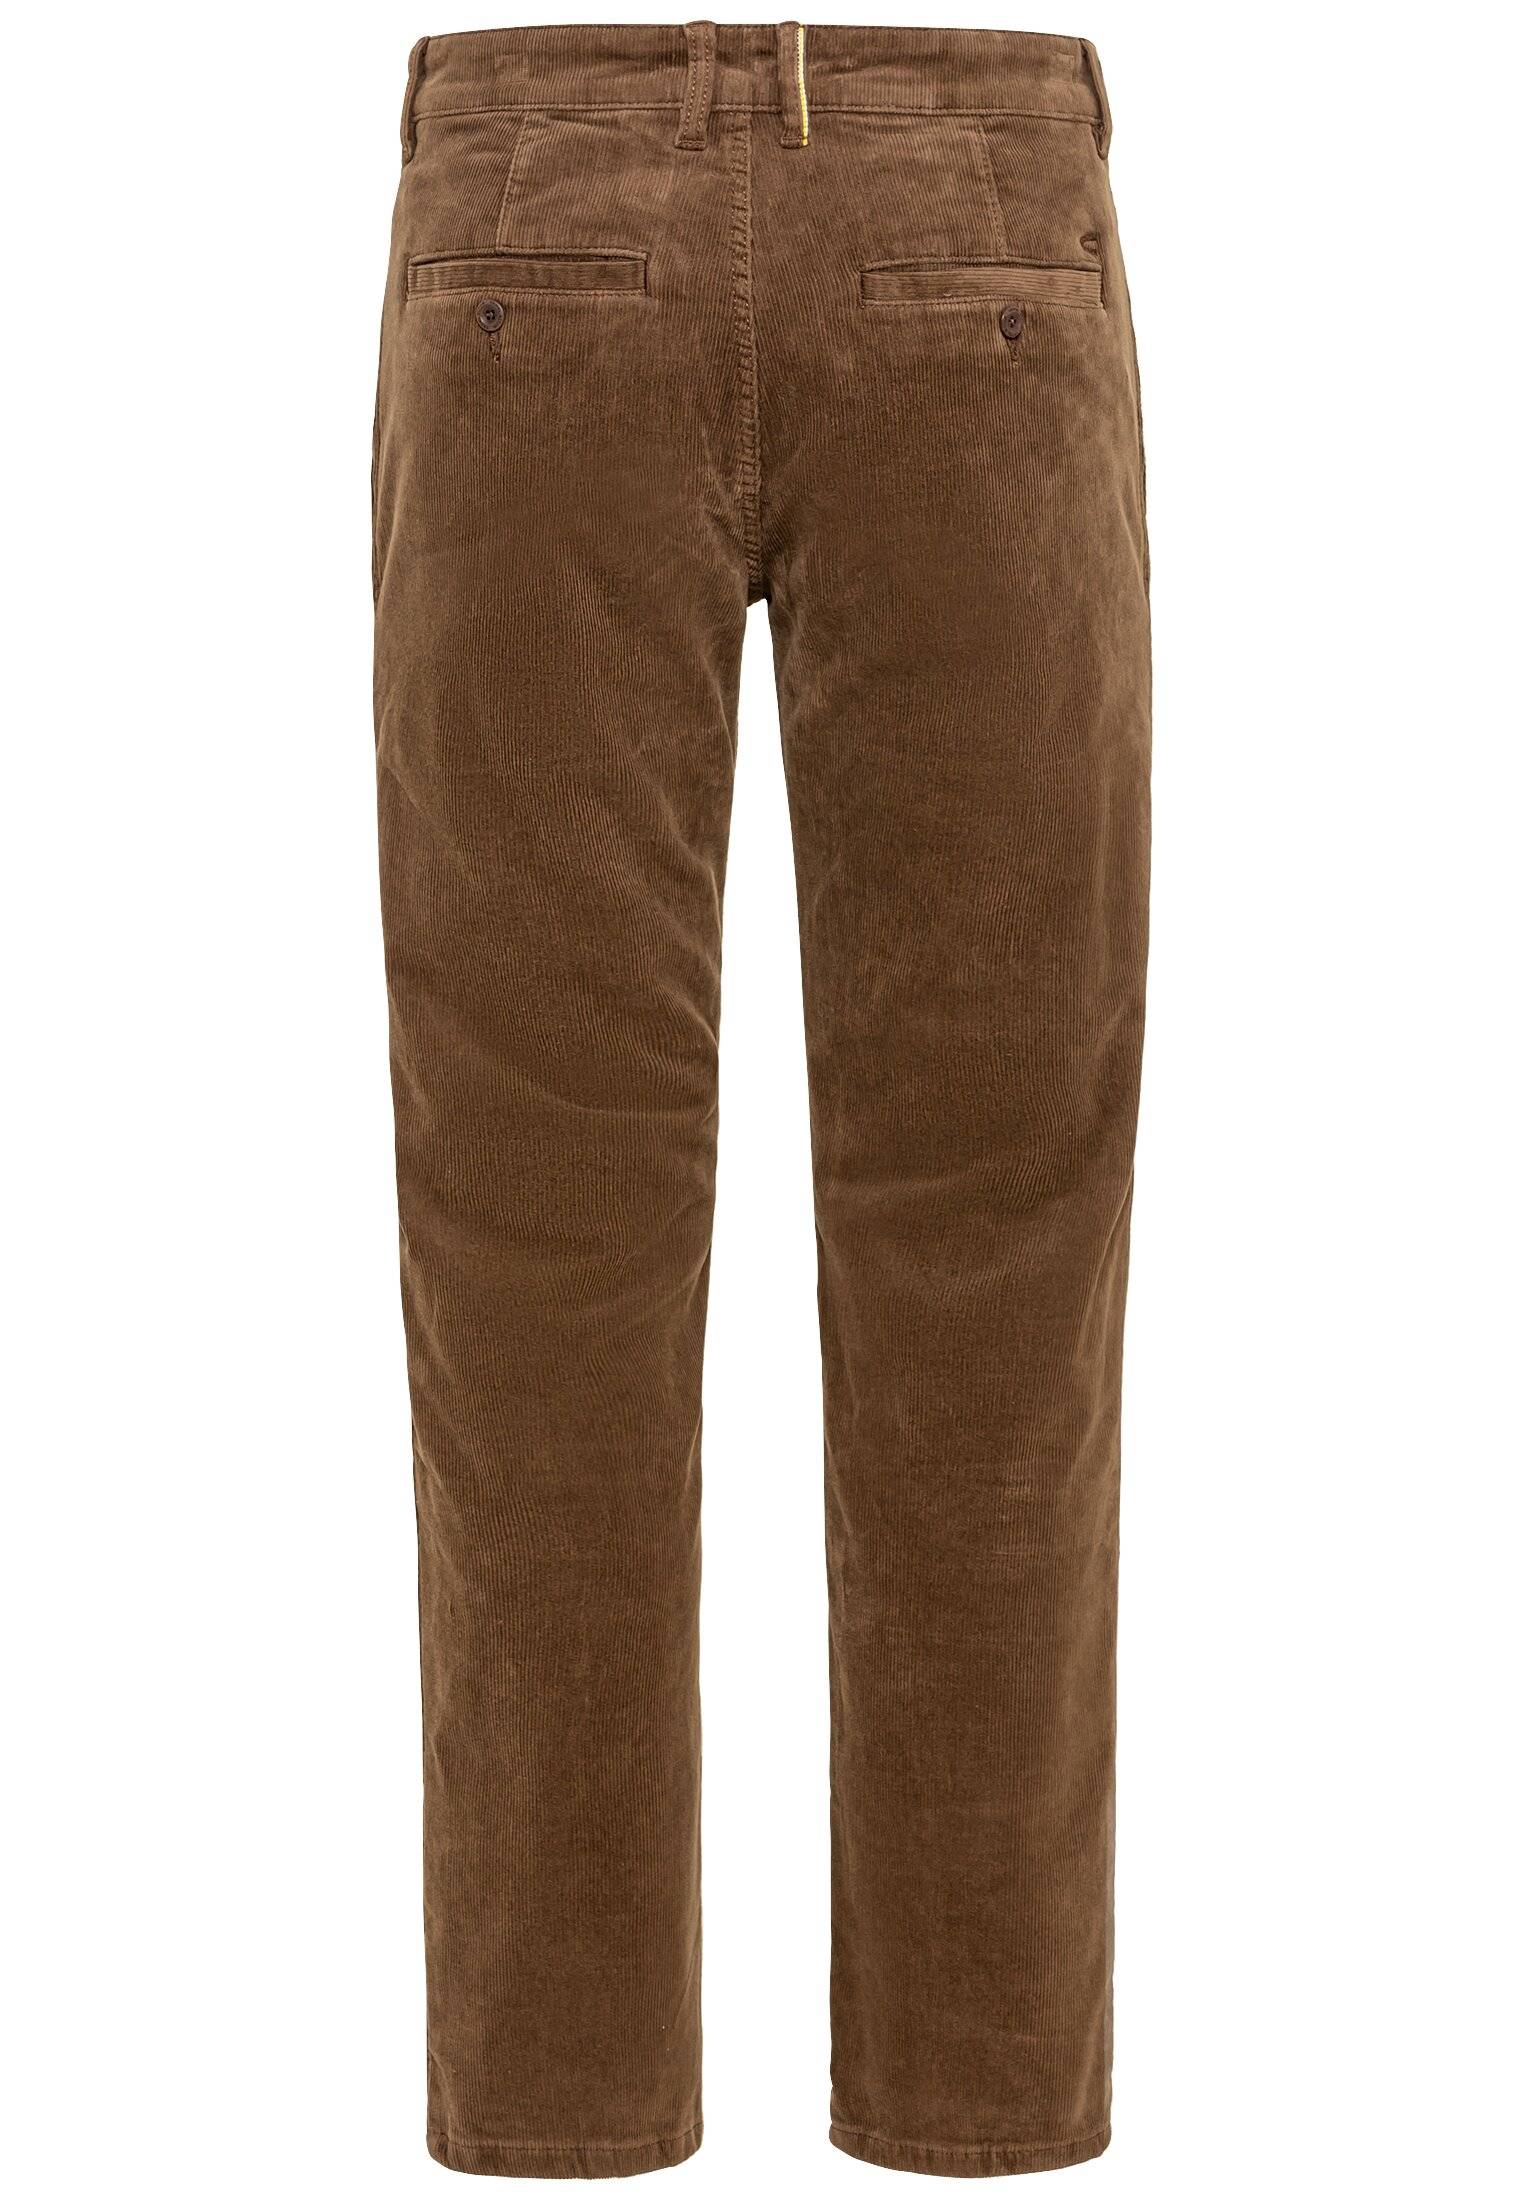 Мужские брюки Camel Active, коричневые, цвет коричневый, размер 36 - фото 2